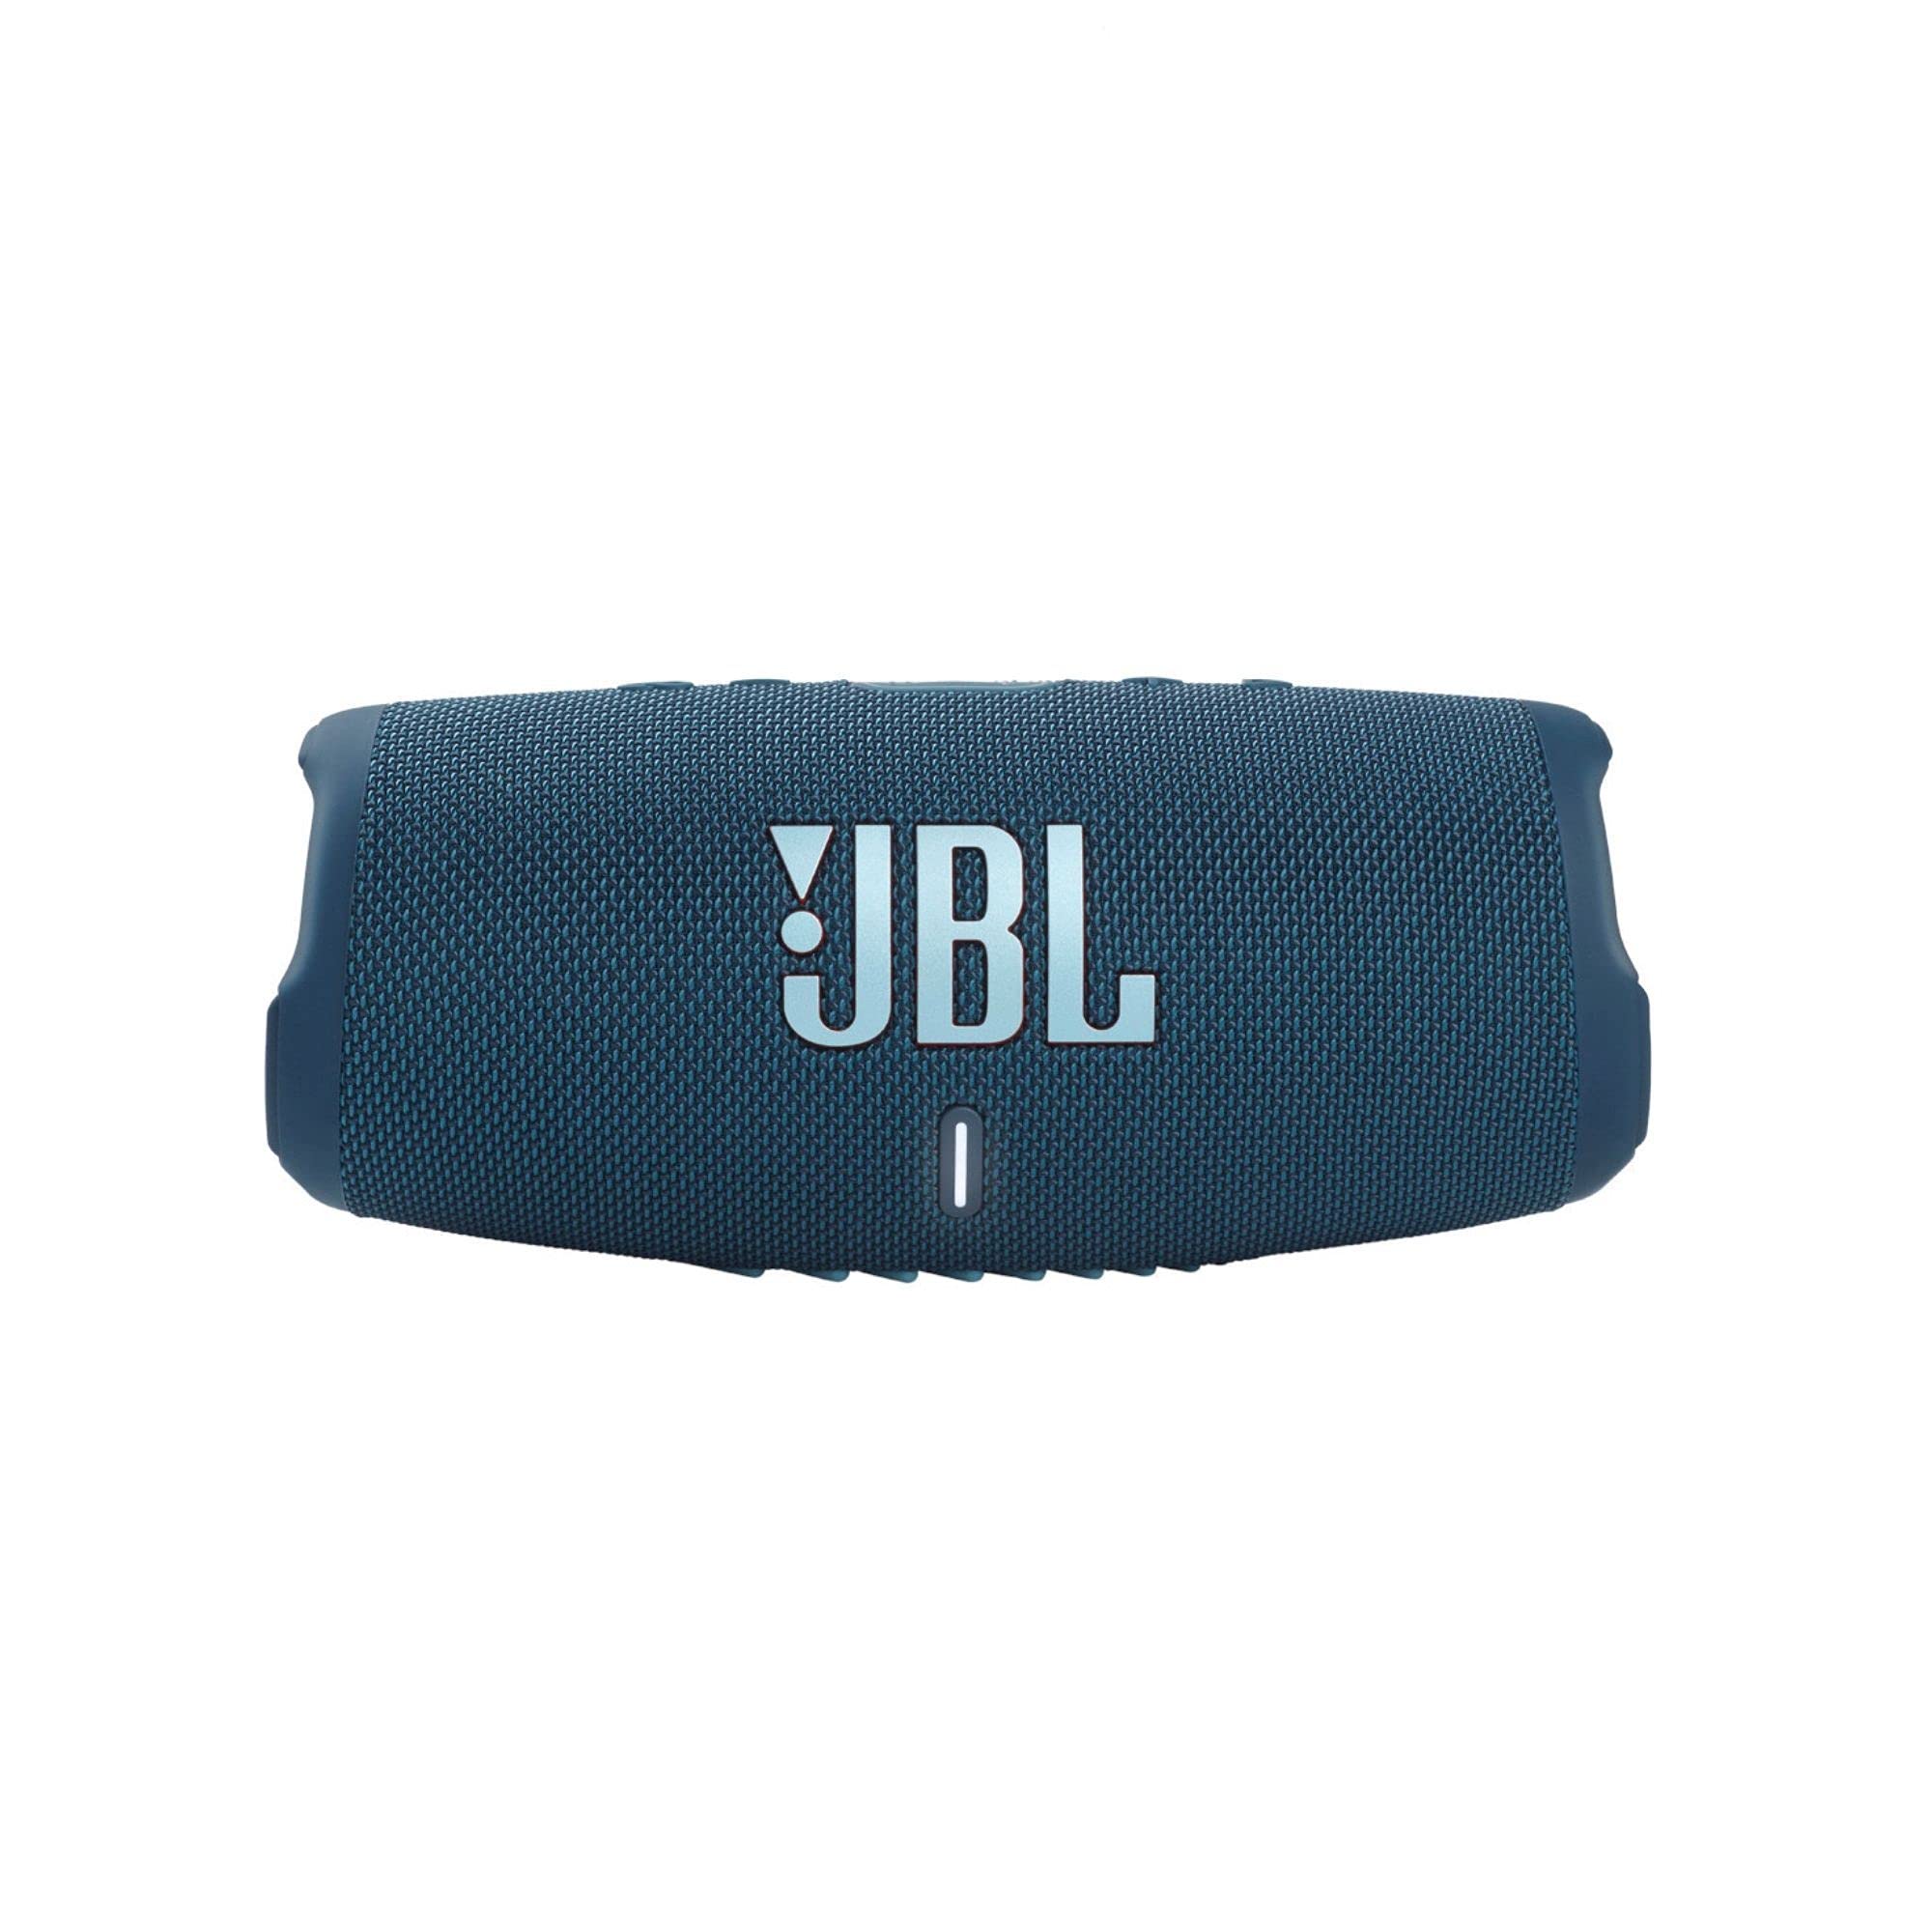 JBL Charge 5 – Tragbarer Bluetooth-Lautsprecher mit IP67-Wasserdichtigkeit und USB-Ladeausgang – Blau (erneuert)